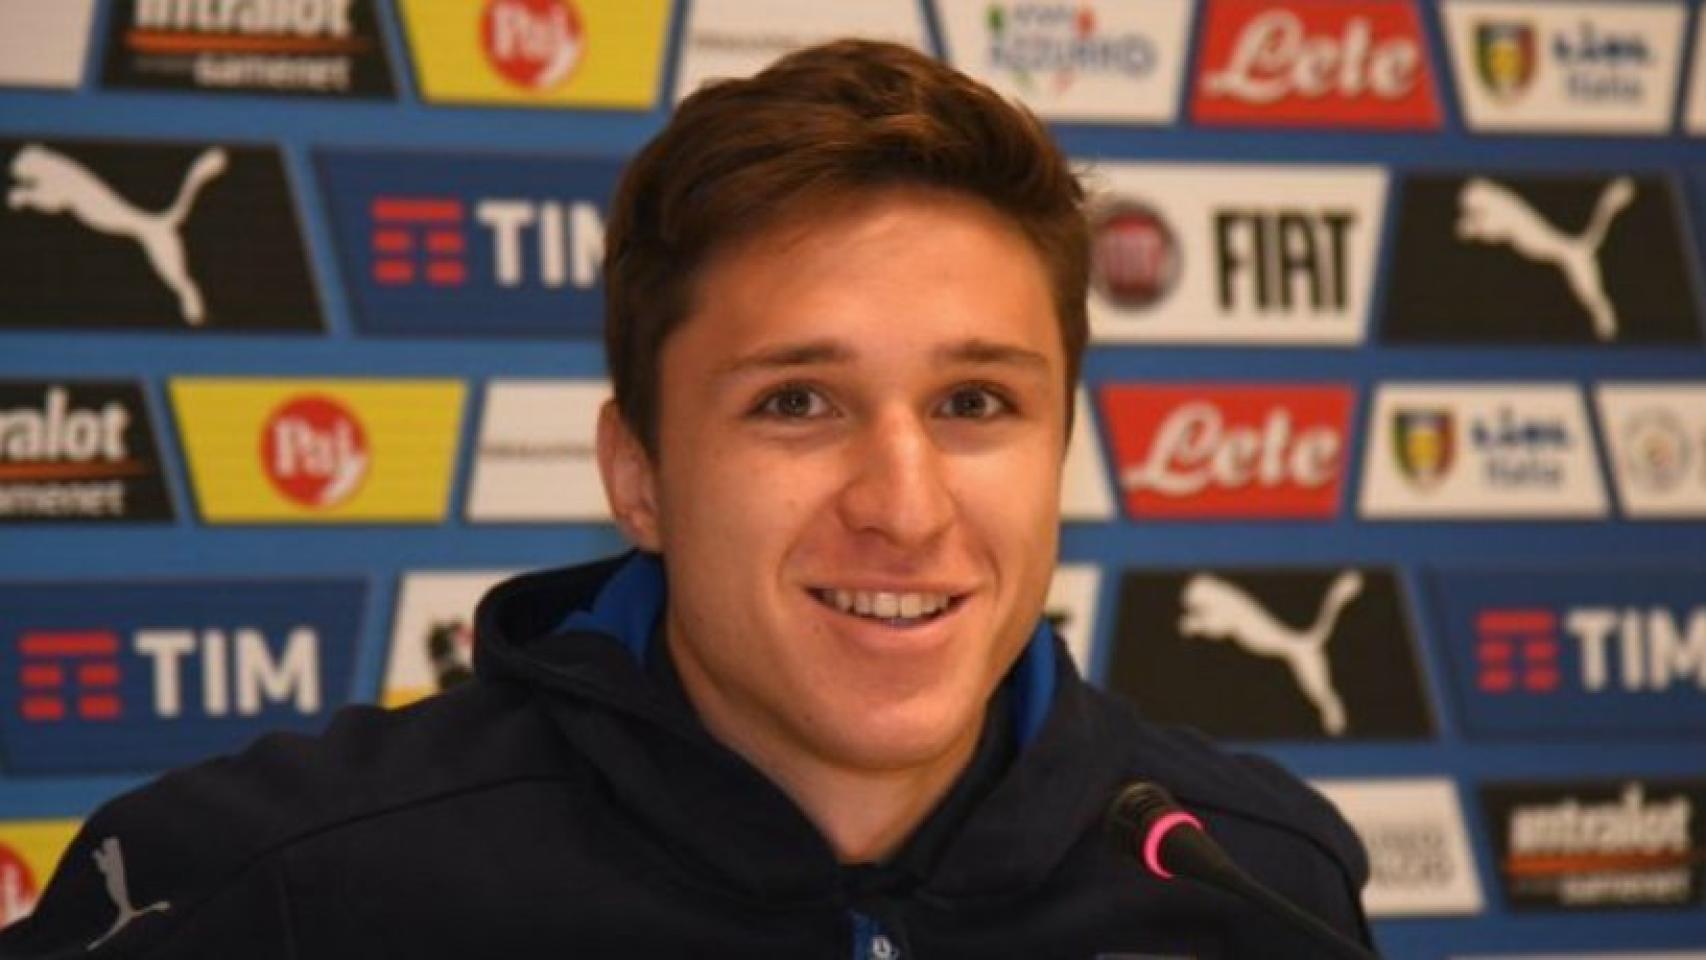 Chiesa, jugador de la Selección italiana. Foto: vivoazzurro.com